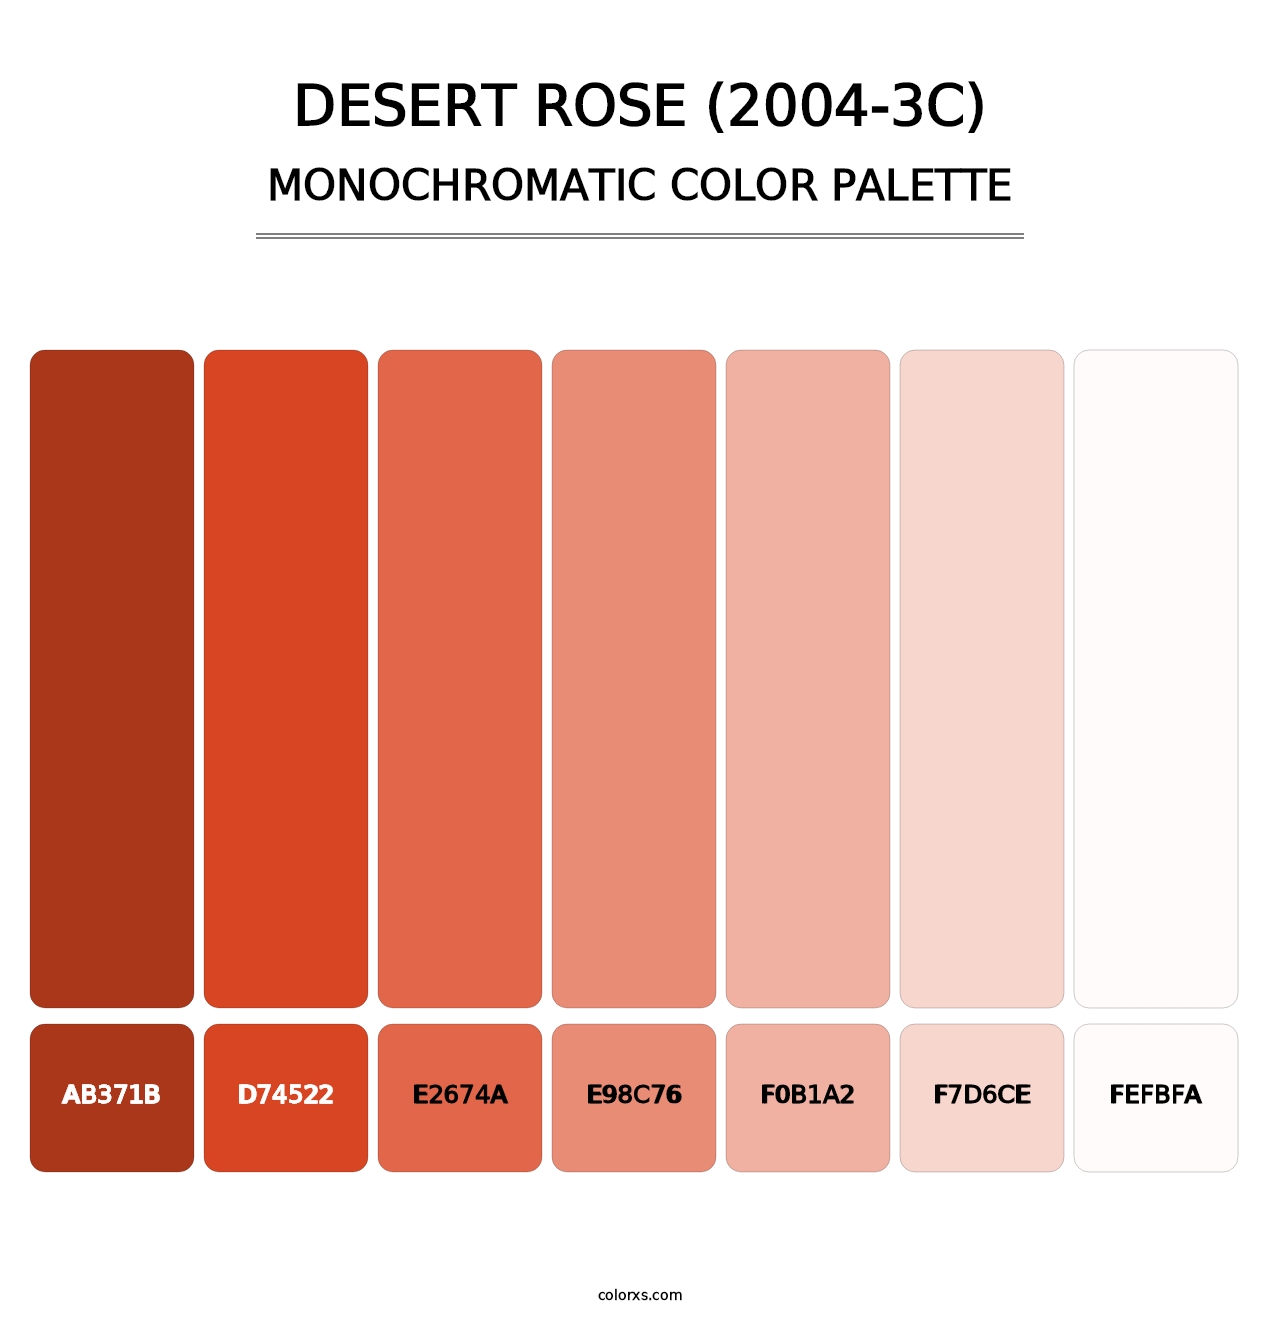 Desert Rose (2004-3C) - Monochromatic Color Palette